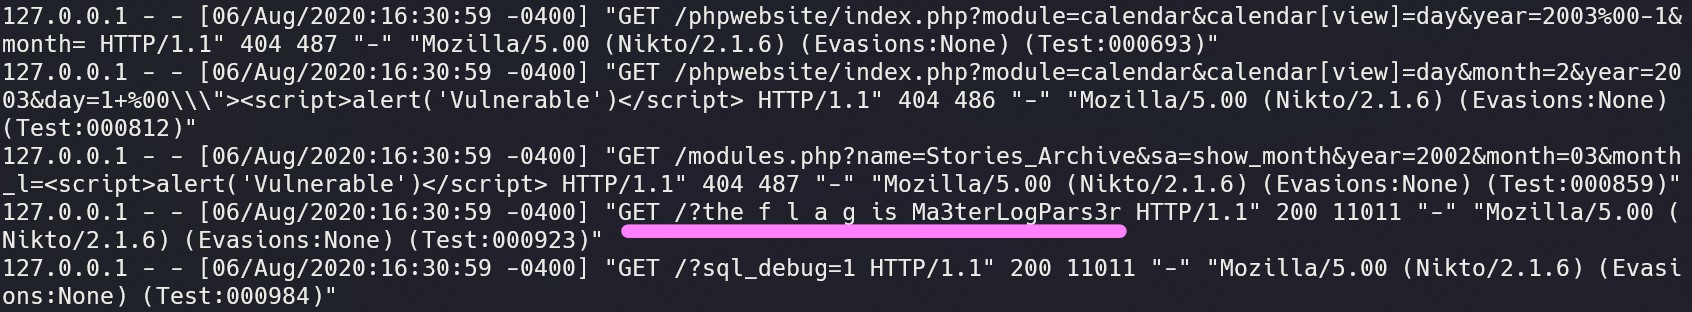 Terminal screenshot of filtered access log